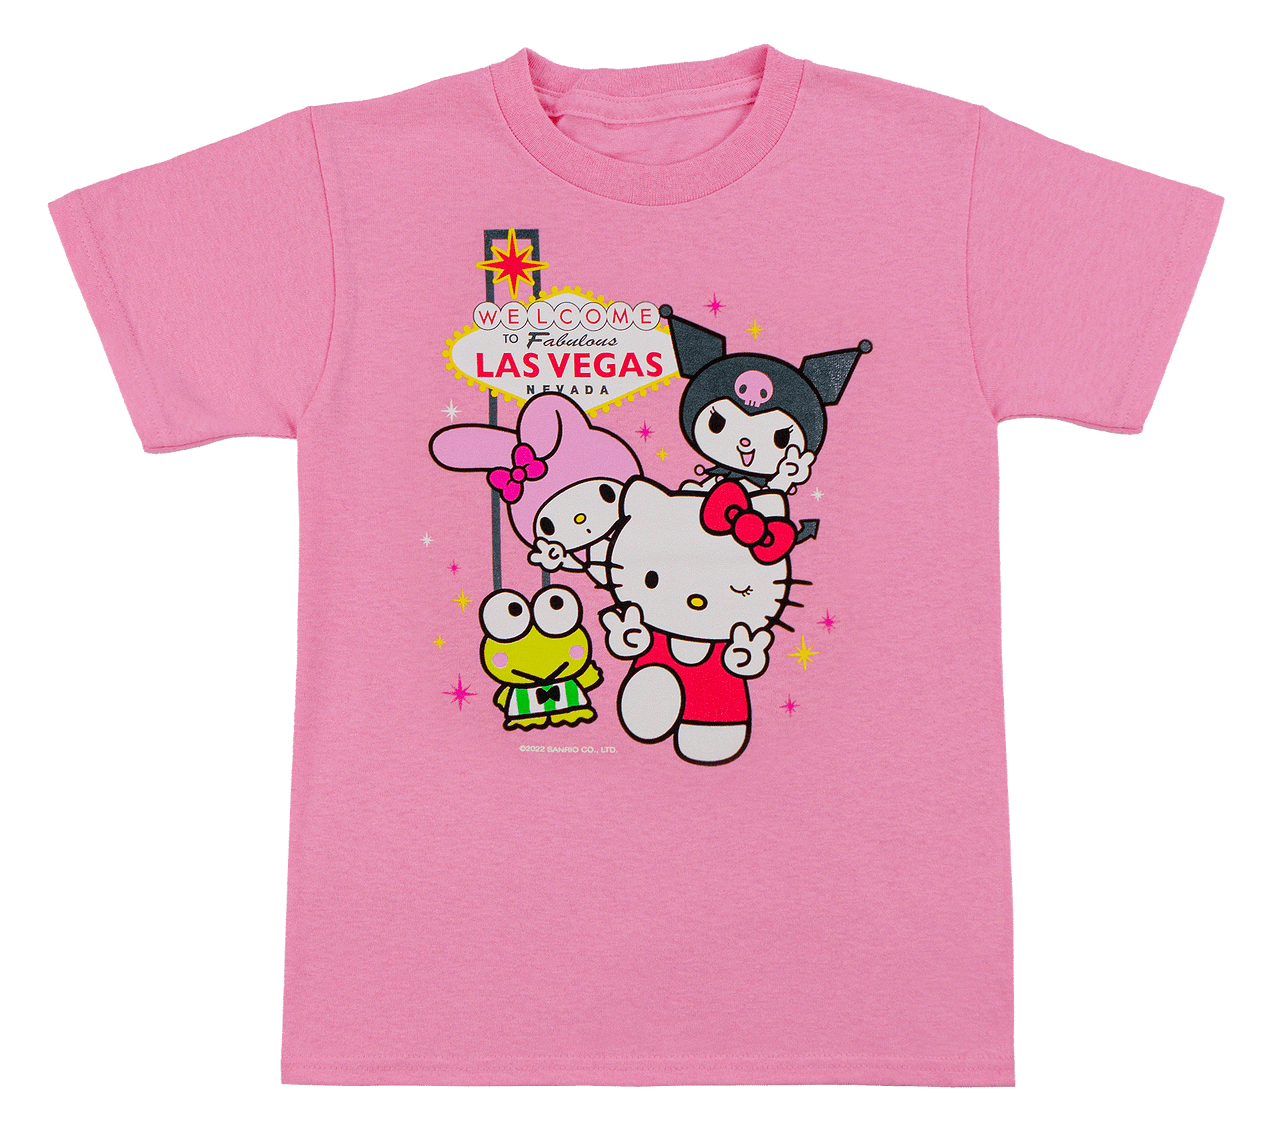 Hello Kitty Pink Summer Hawaiian Shirt And Shorts